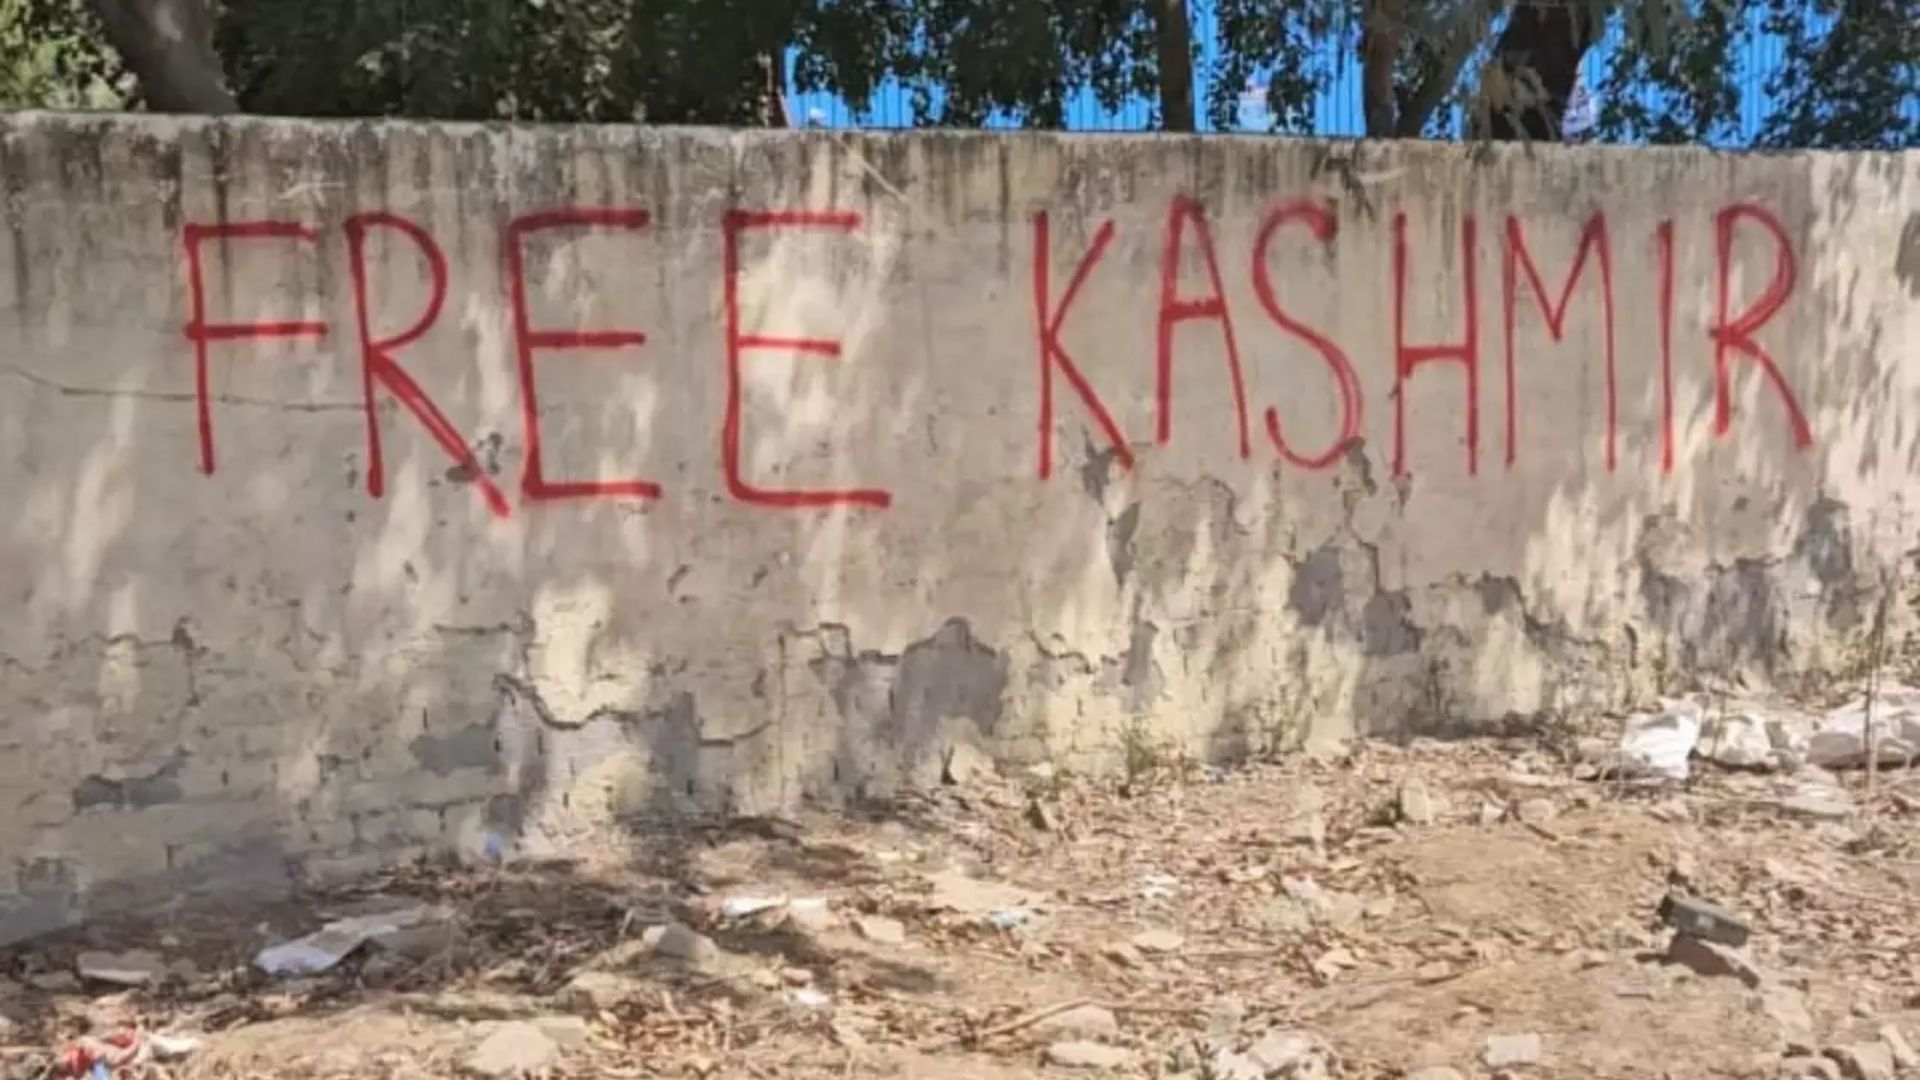 Delhi: ‘Free Kashmir’ Written On DDA’s Park Wall, Investigation Underway